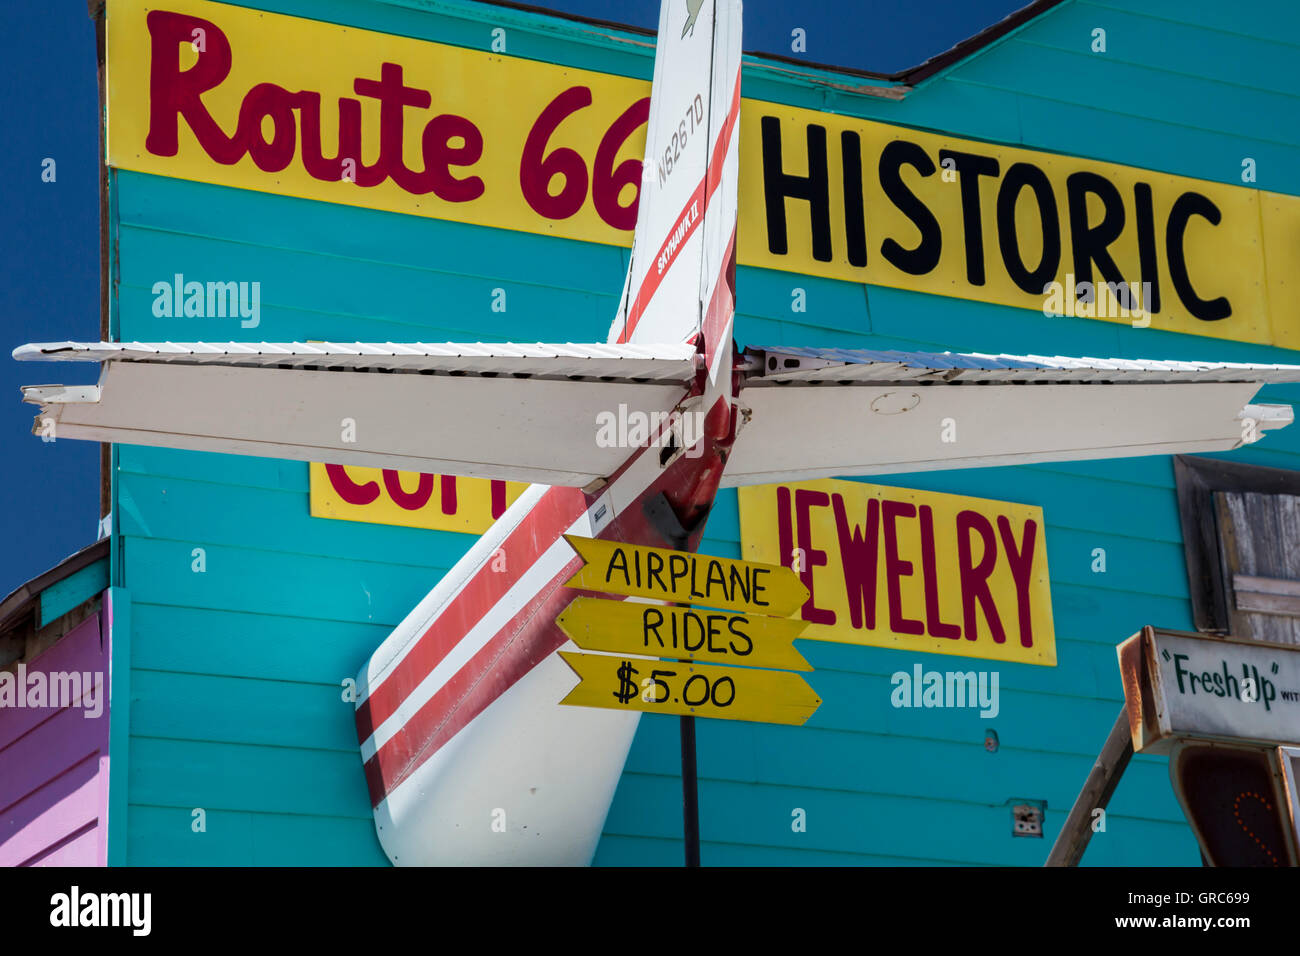 Seligman, Arizona - negozi di souvenir e altre attrazioni turistiche La linea US Route 66. Uno shop offre gite in aeroplano per $5.00. Foto Stock